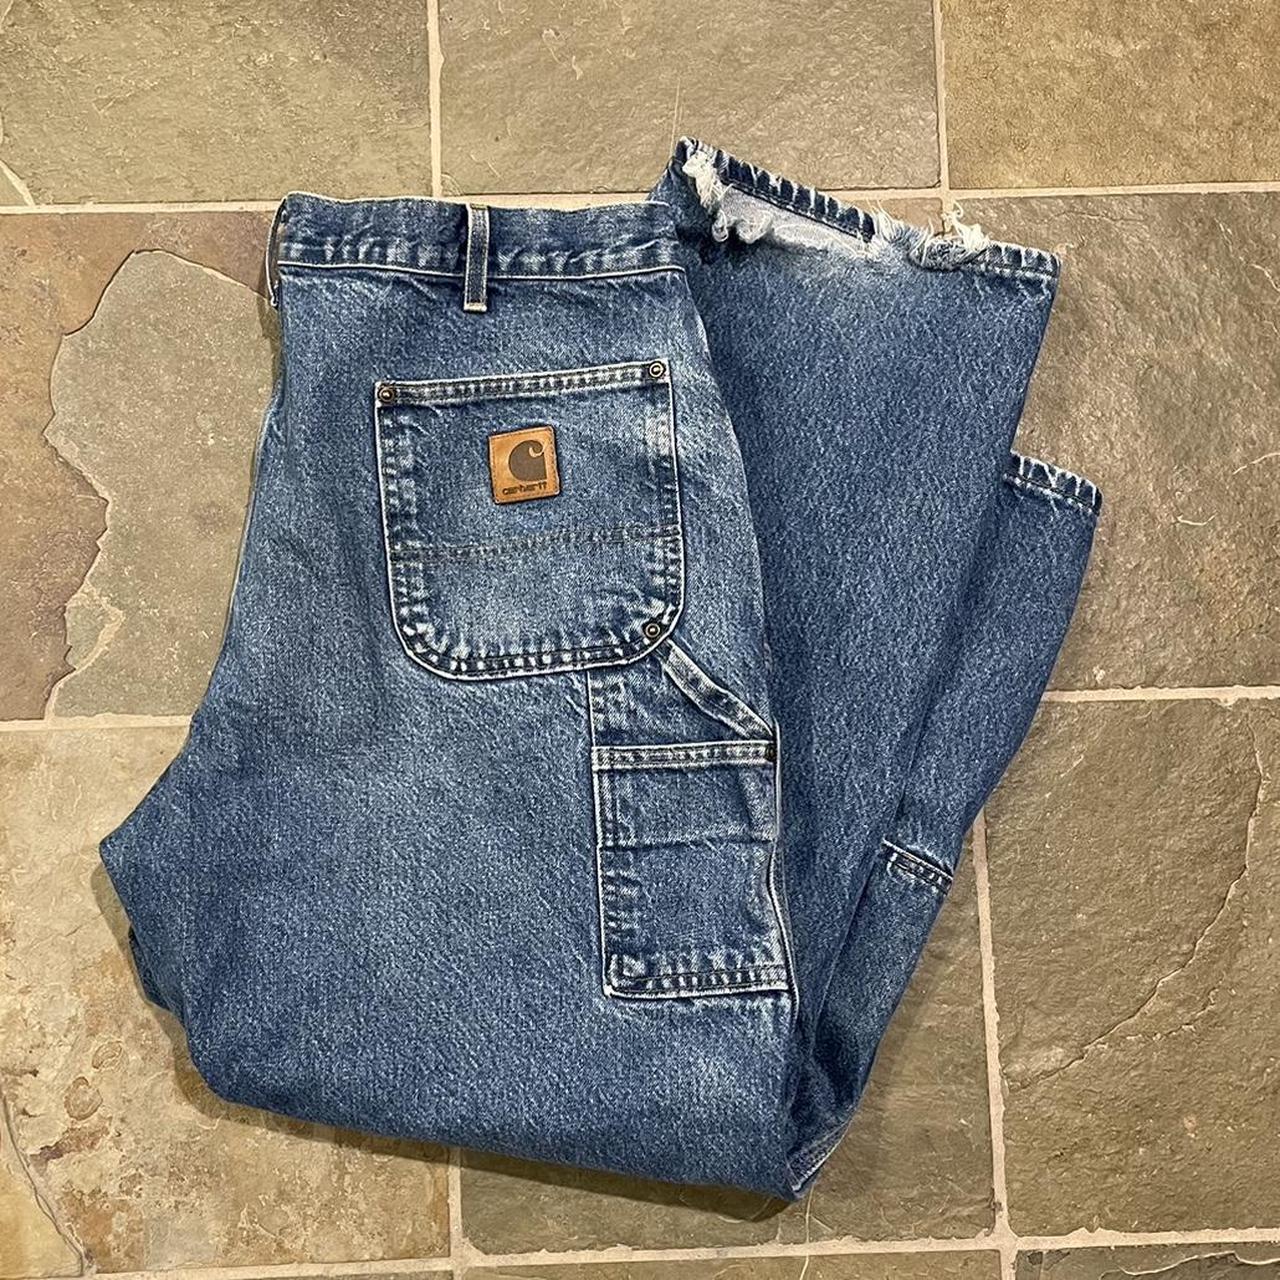 Carhartt double knee jeans 40x30 Flaws shown in... - Depop